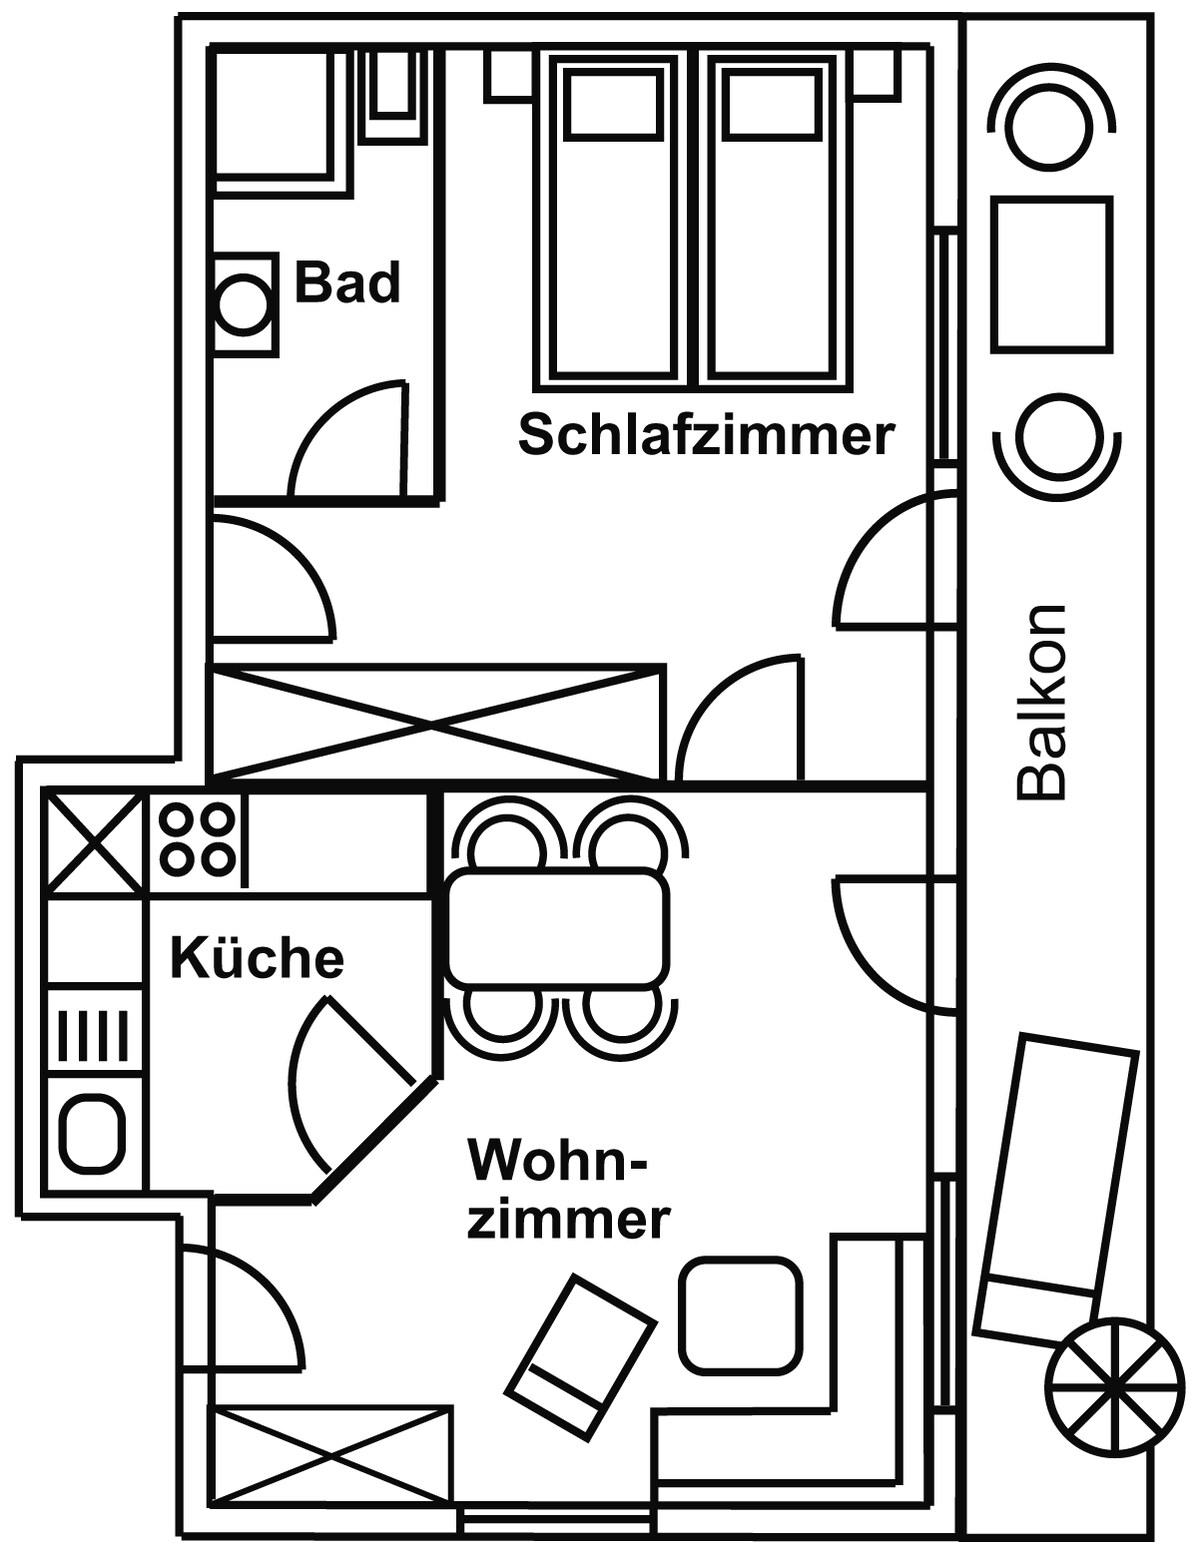 公寓2 - 41平方米